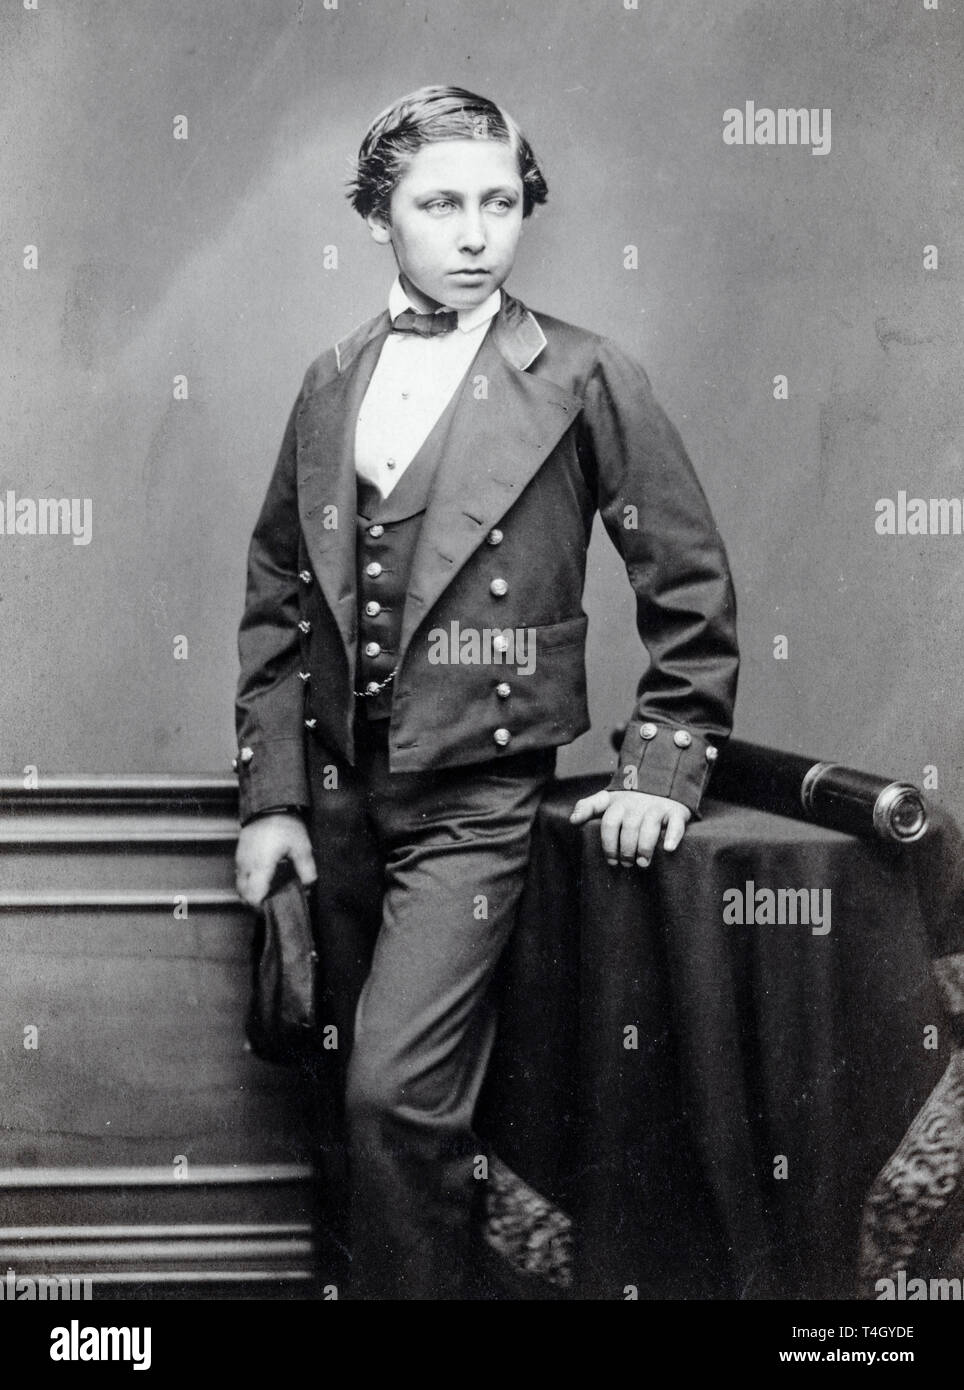 John Jabez Edwin Mayal, der Prinz von Wales (Edward VII.), Portraitfotografie als Teenager, um 1856 Stockfoto